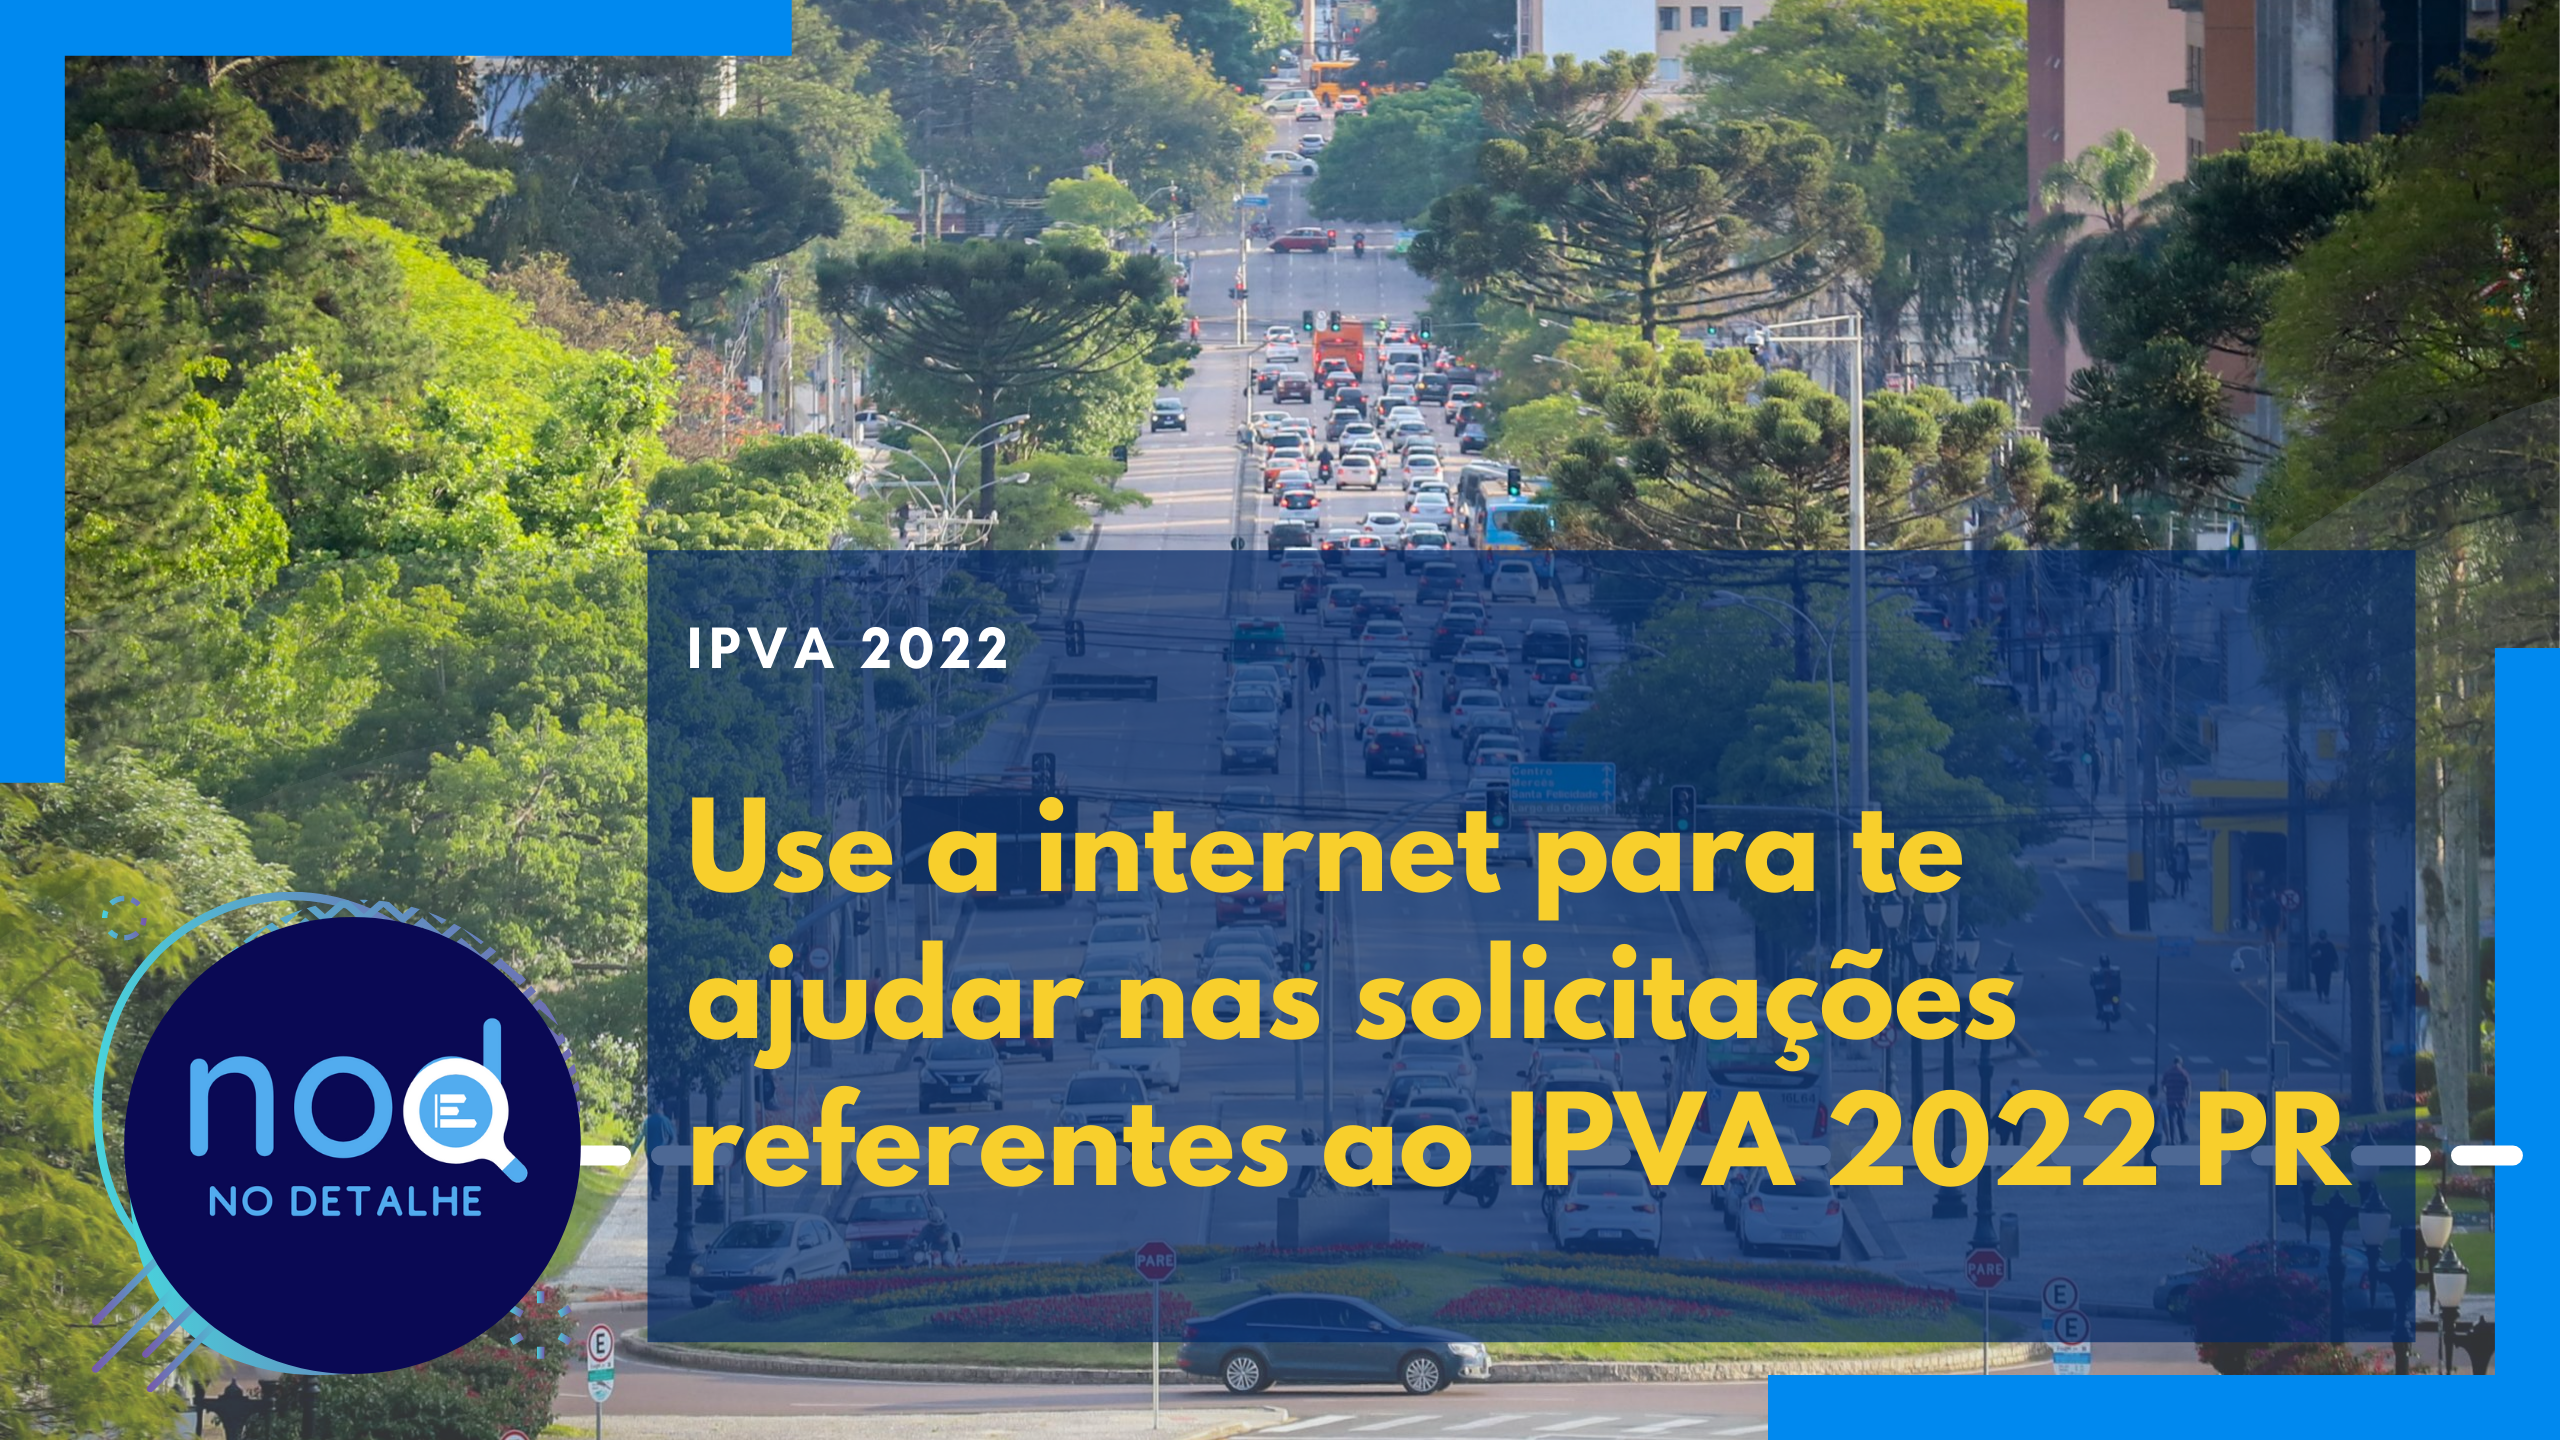 Pedidos relacionados ao IPVA 2022 PR podem ser solicitados pela internet. Veja como funciona